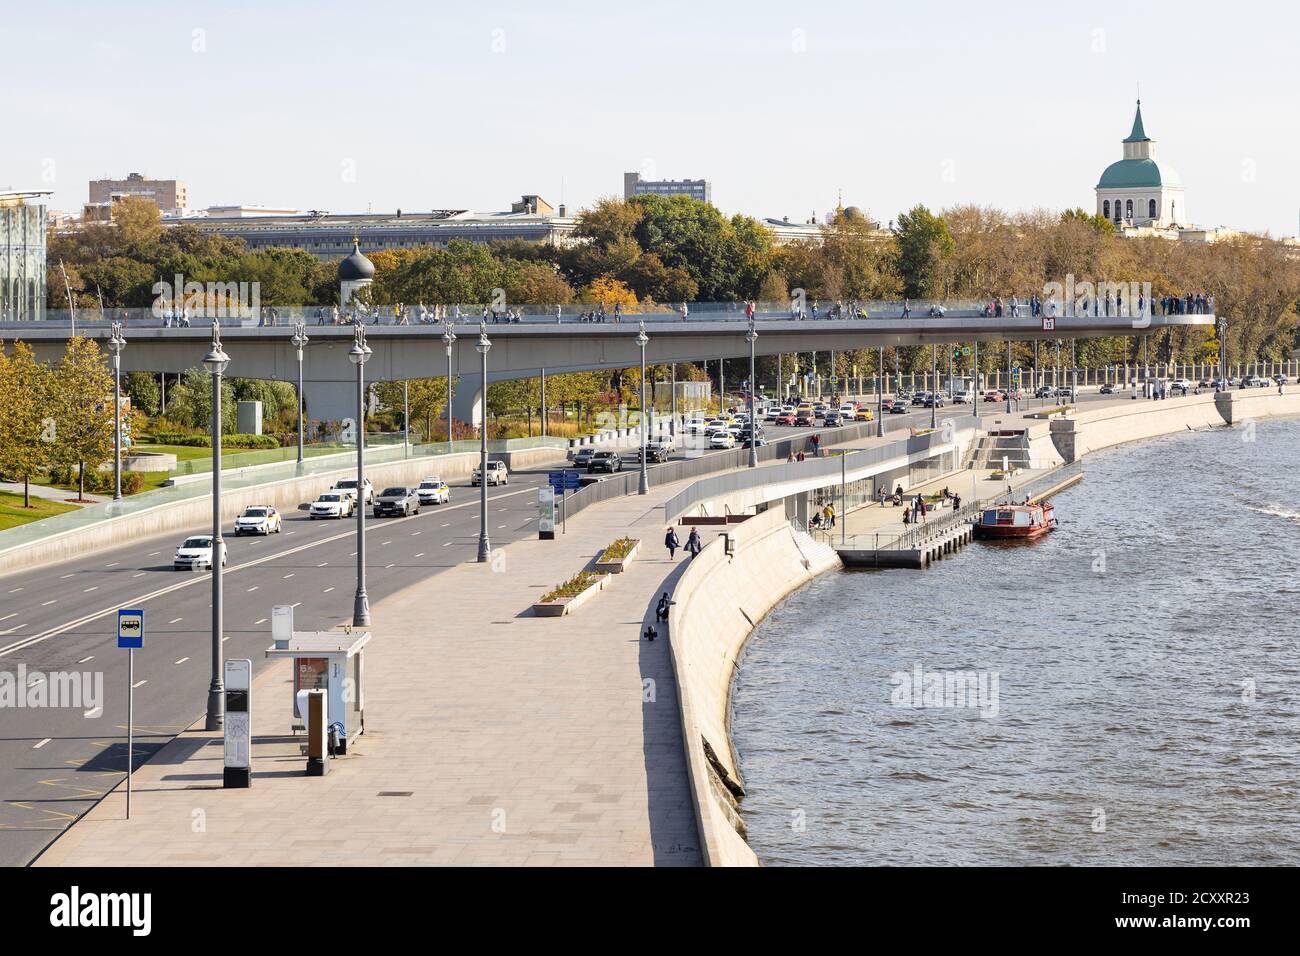 MOSCA, RUSSIA - 27 SETTEMBRE 2020: Vista del Ponte galleggiante del Parco paesaggistico di Zaryadye sopra Moskvoretskaya Embankment del fiume Moskva da Bolsho Foto Stock